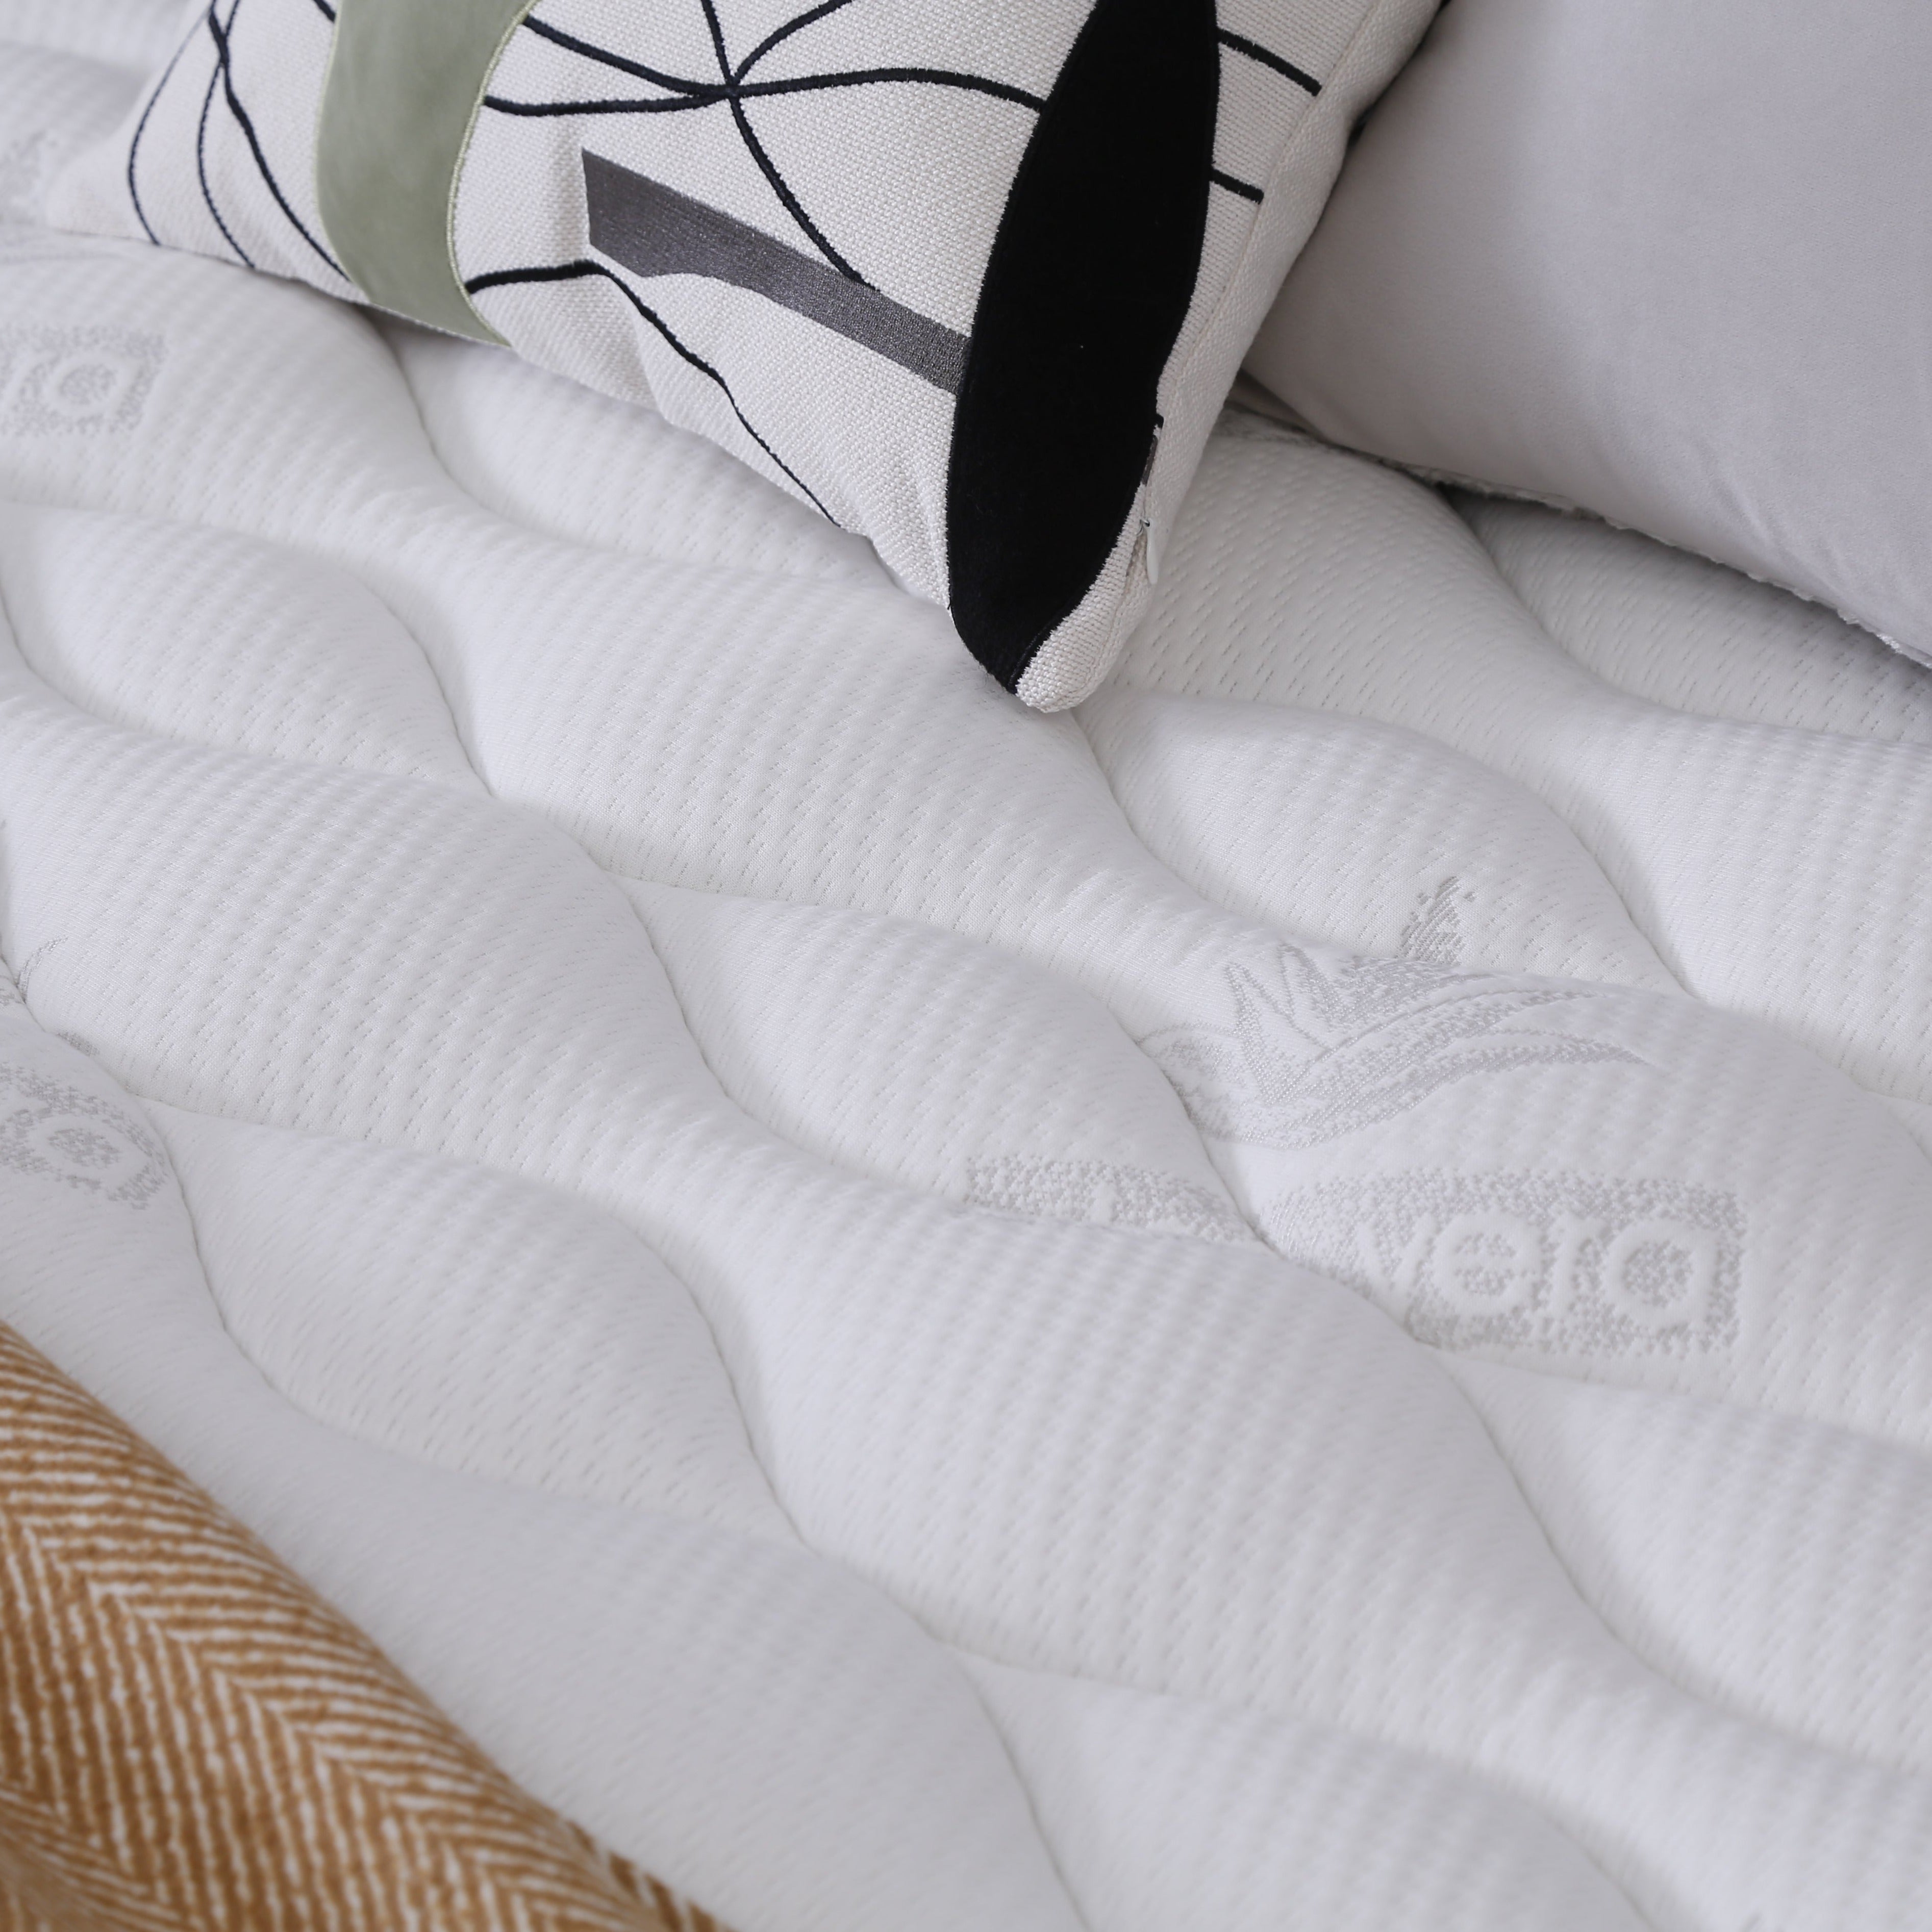 DreamWorld - Comfort dýna   90-180 cm.